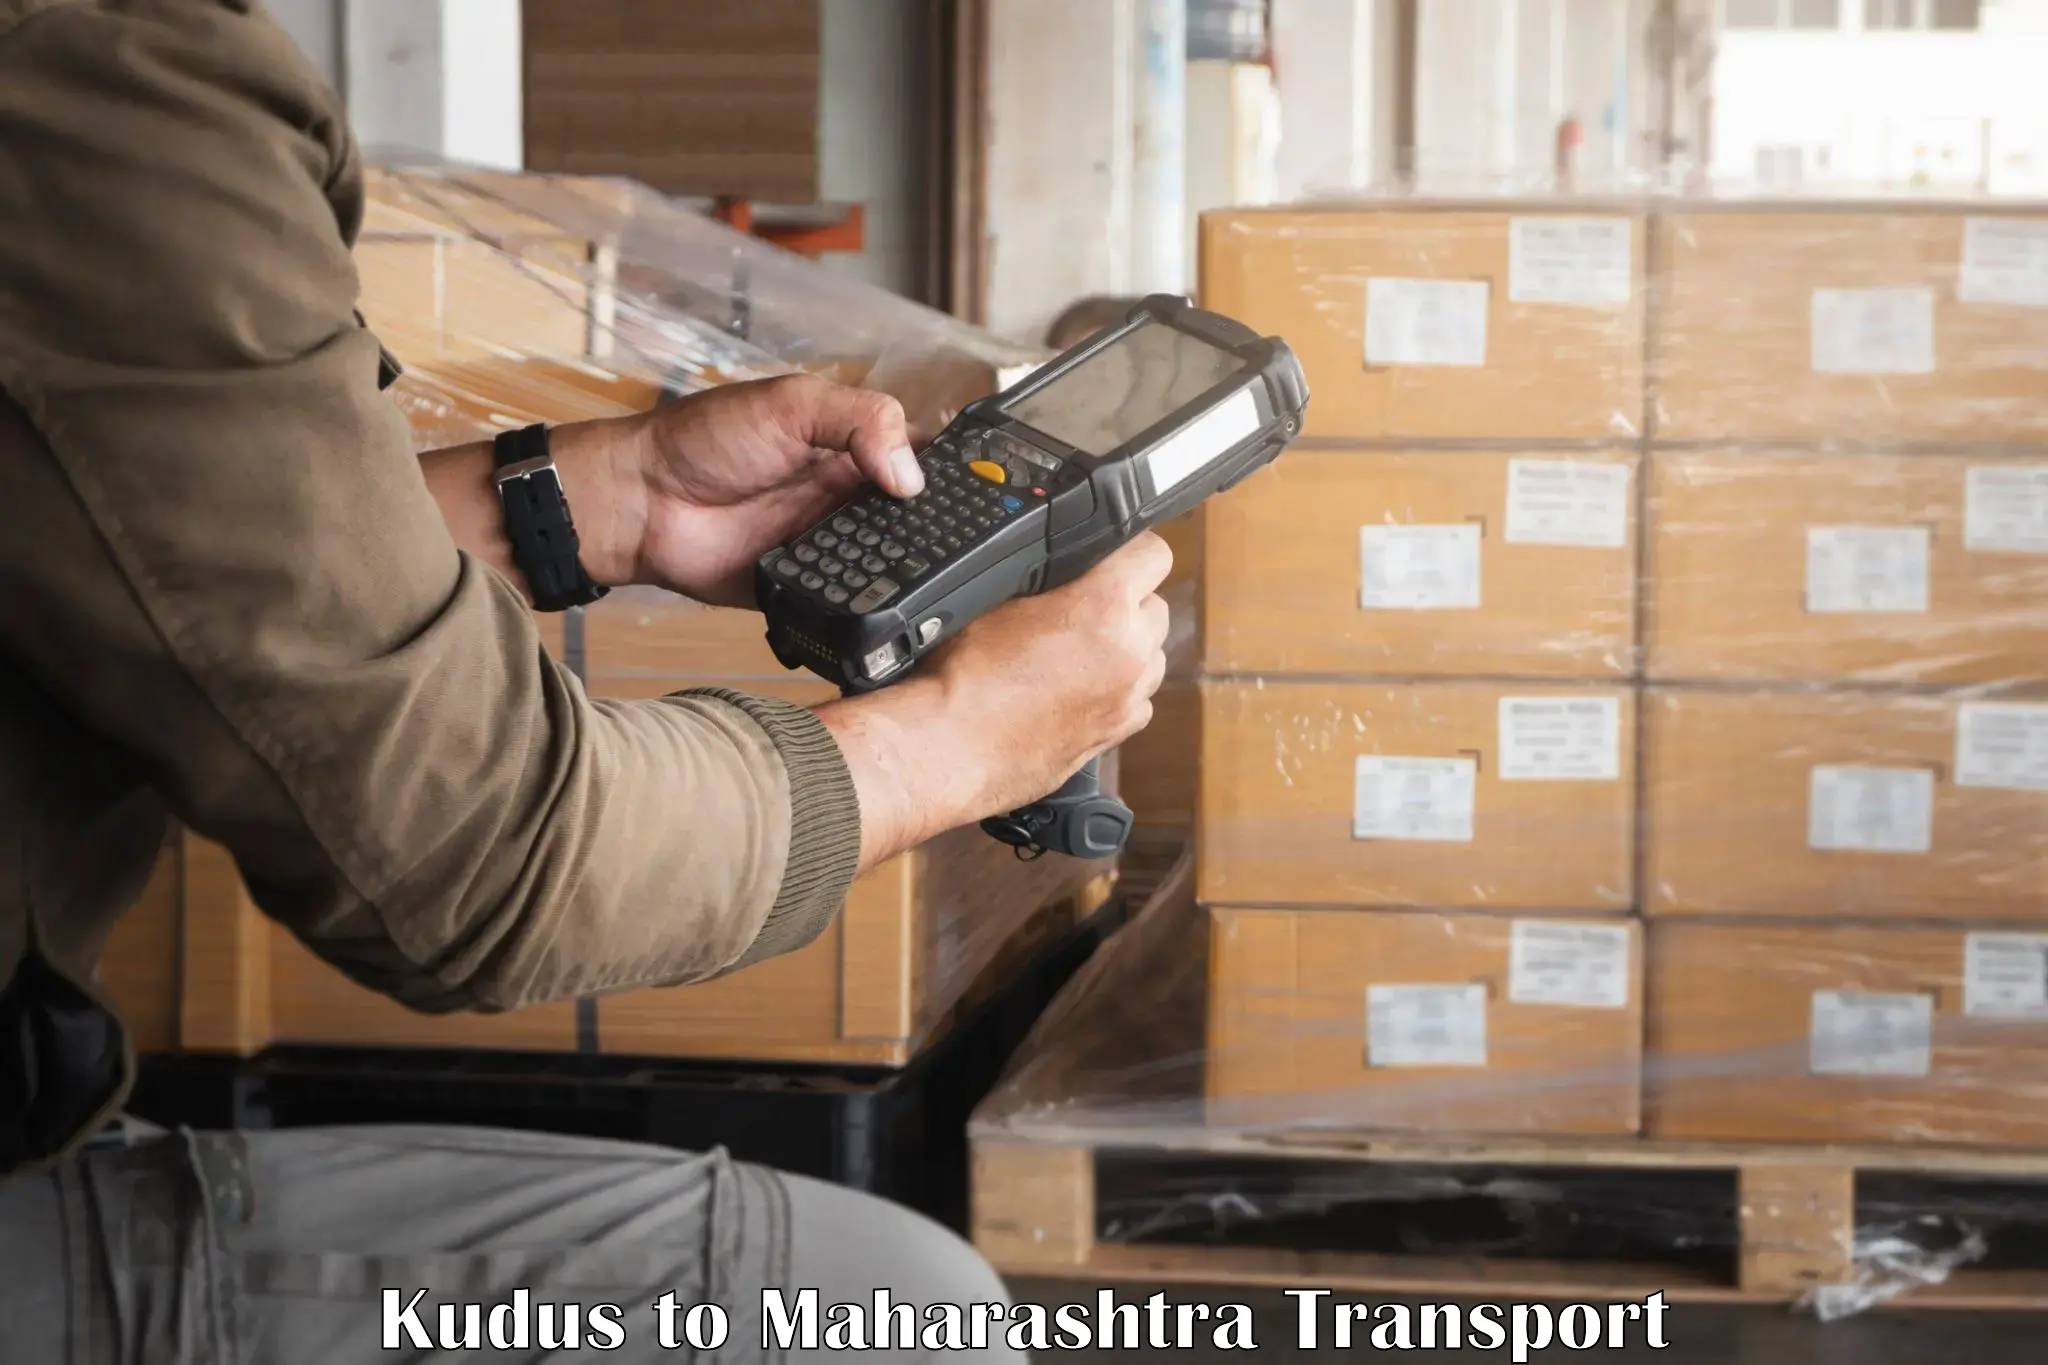 Lorry transport service Kudus to Navi Mumbai